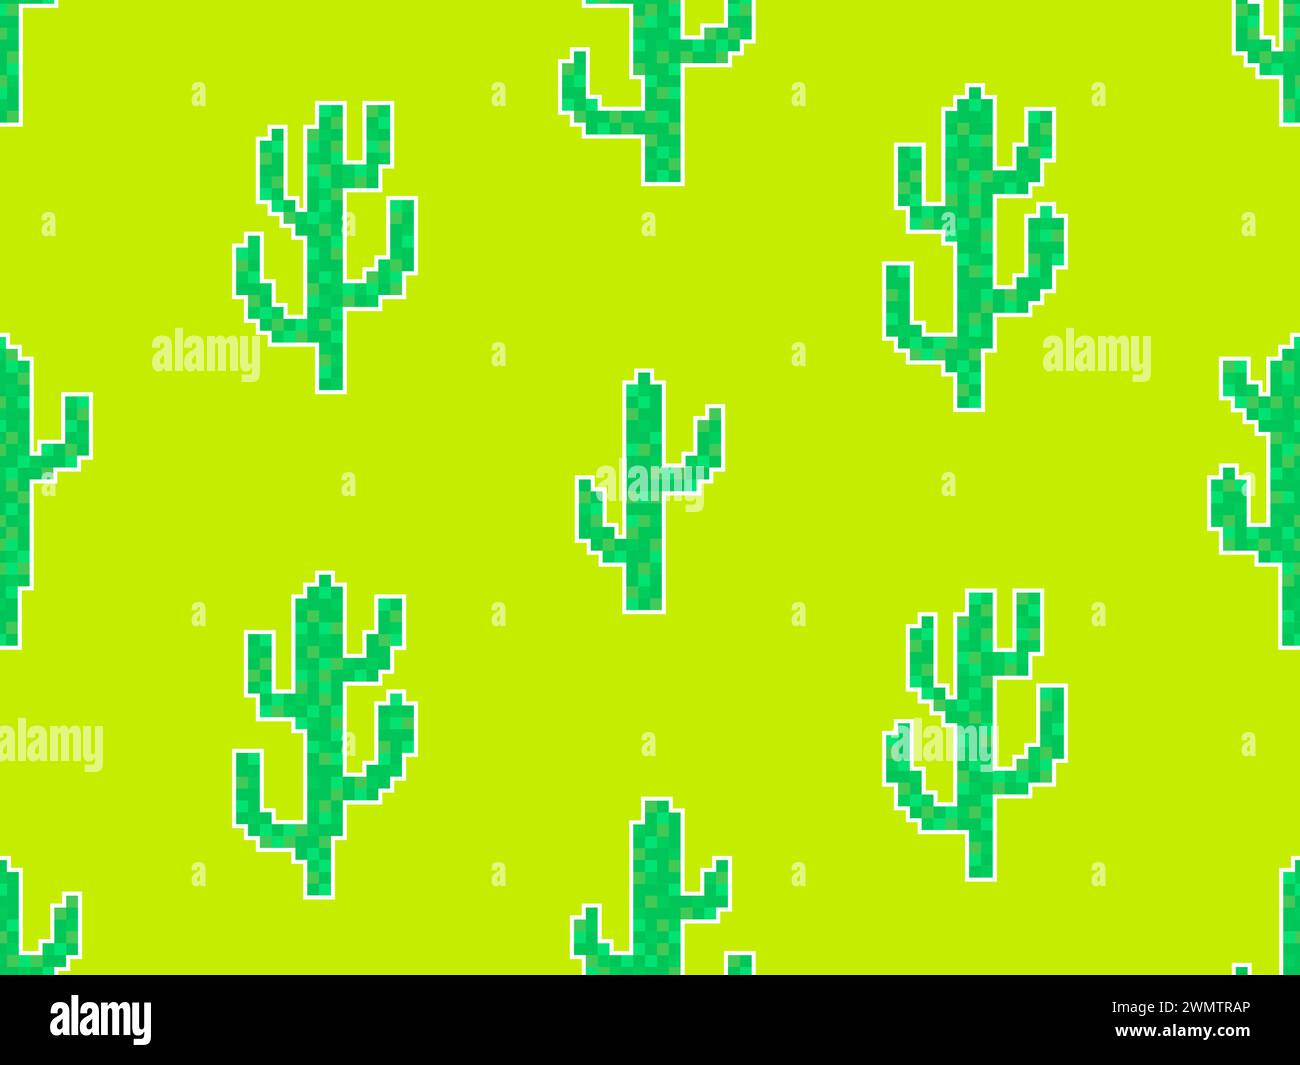 Pattern senza cuciture con cactus in stile pixel art. cactus a 8 bit con contorno bianco nello stile dei classici videogiochi degli anni '80. Design retrò per stampa, wrappi Illustrazione Vettoriale